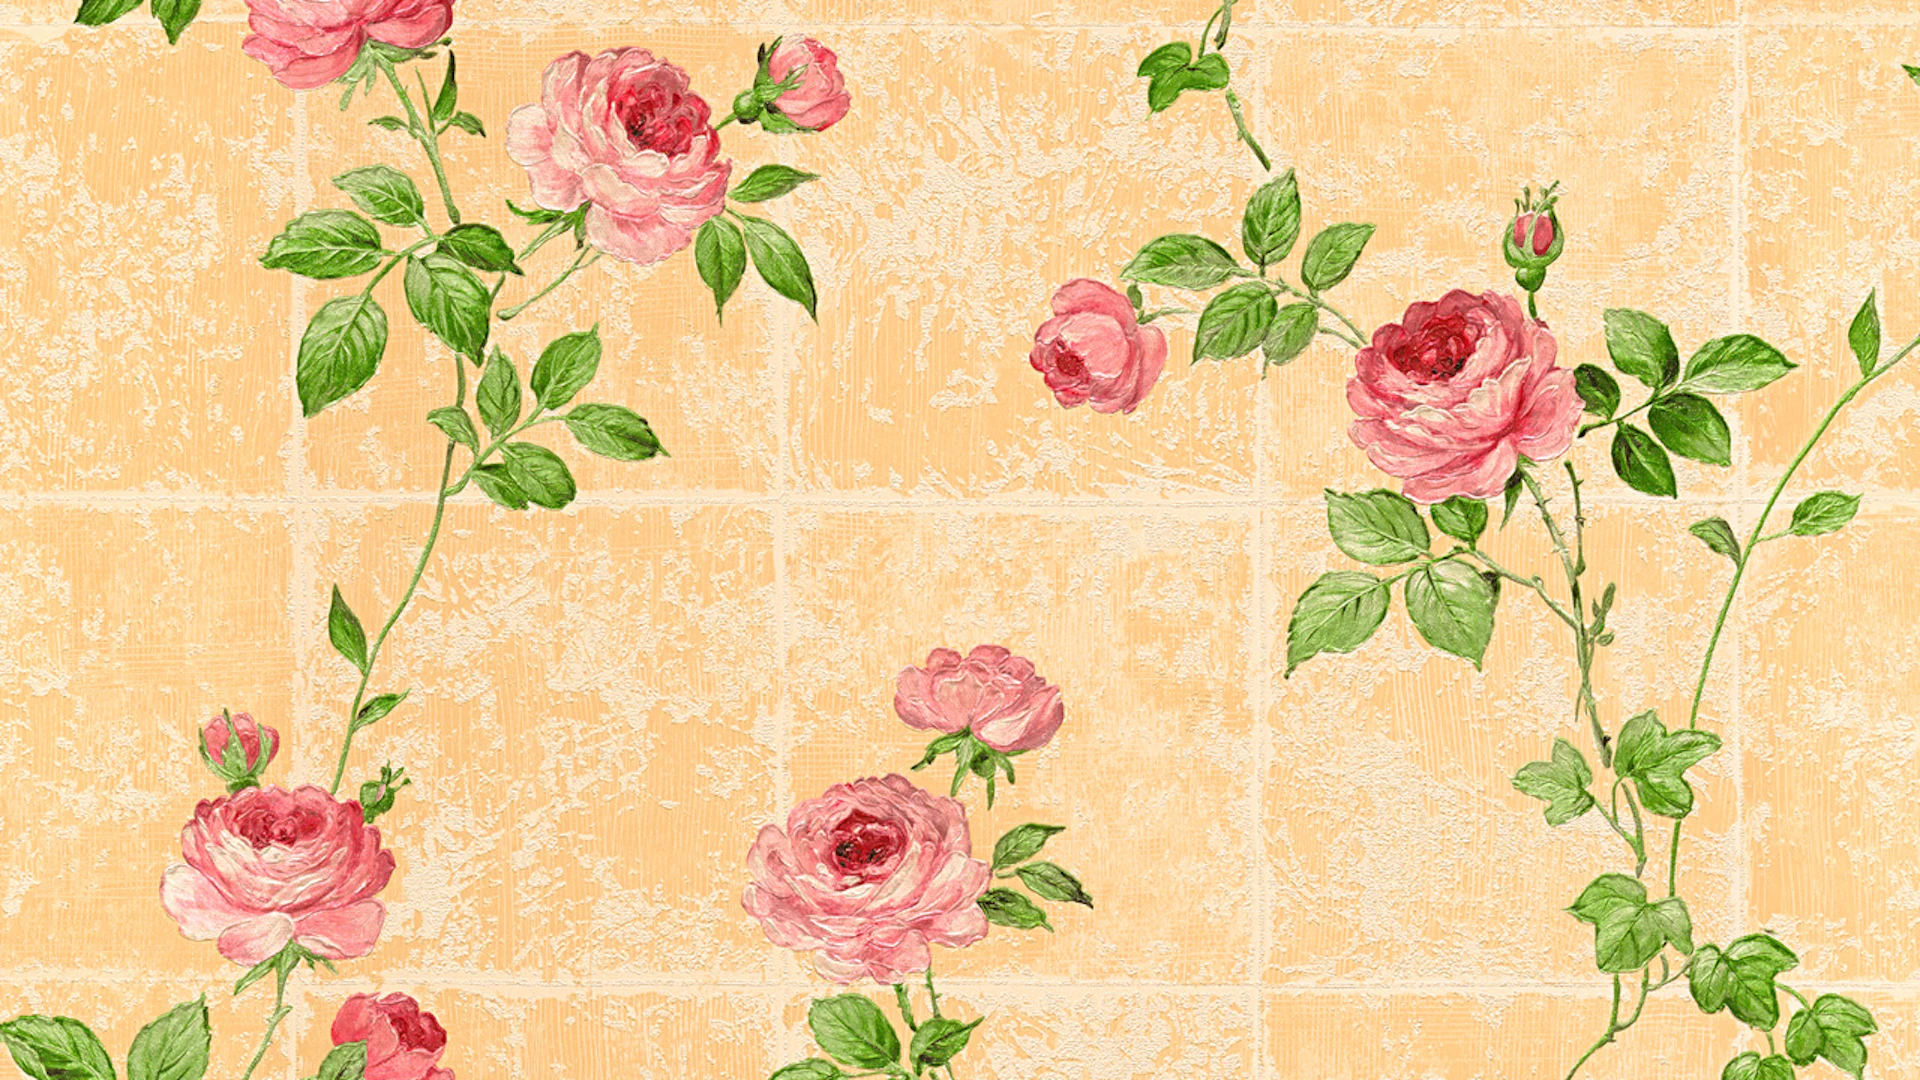 Papier peint vinyle rose classique rétro fleurs & nature château 5 016